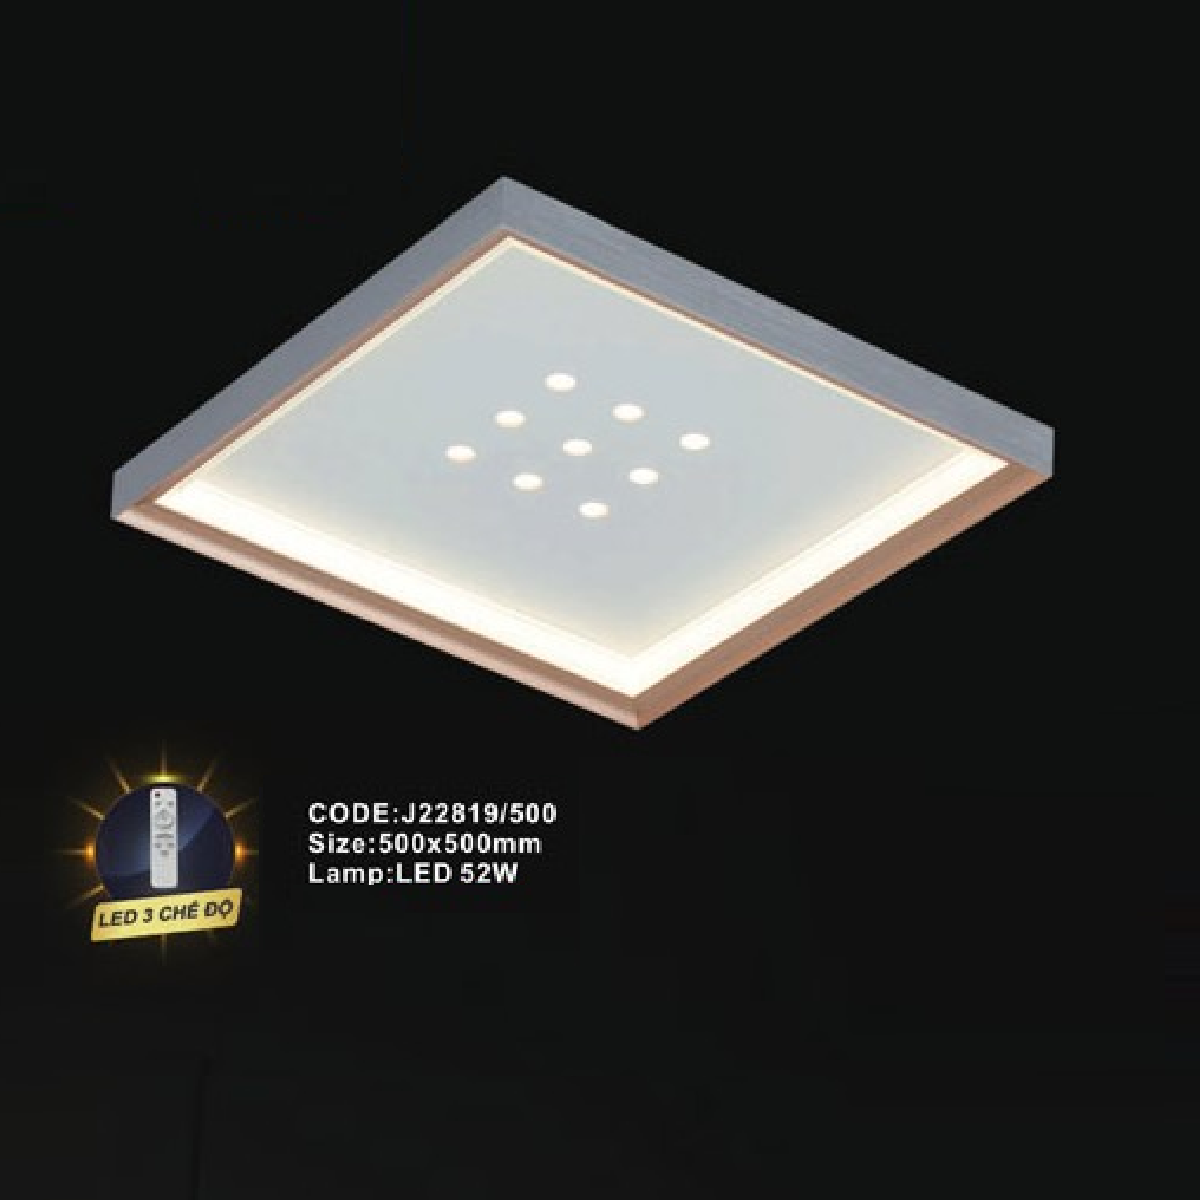 CODE: J22819/500: Đèn áp trần LED - KT: L500mm x W500mm - Đèn LED 52W ánh sáng đổi 3 màu